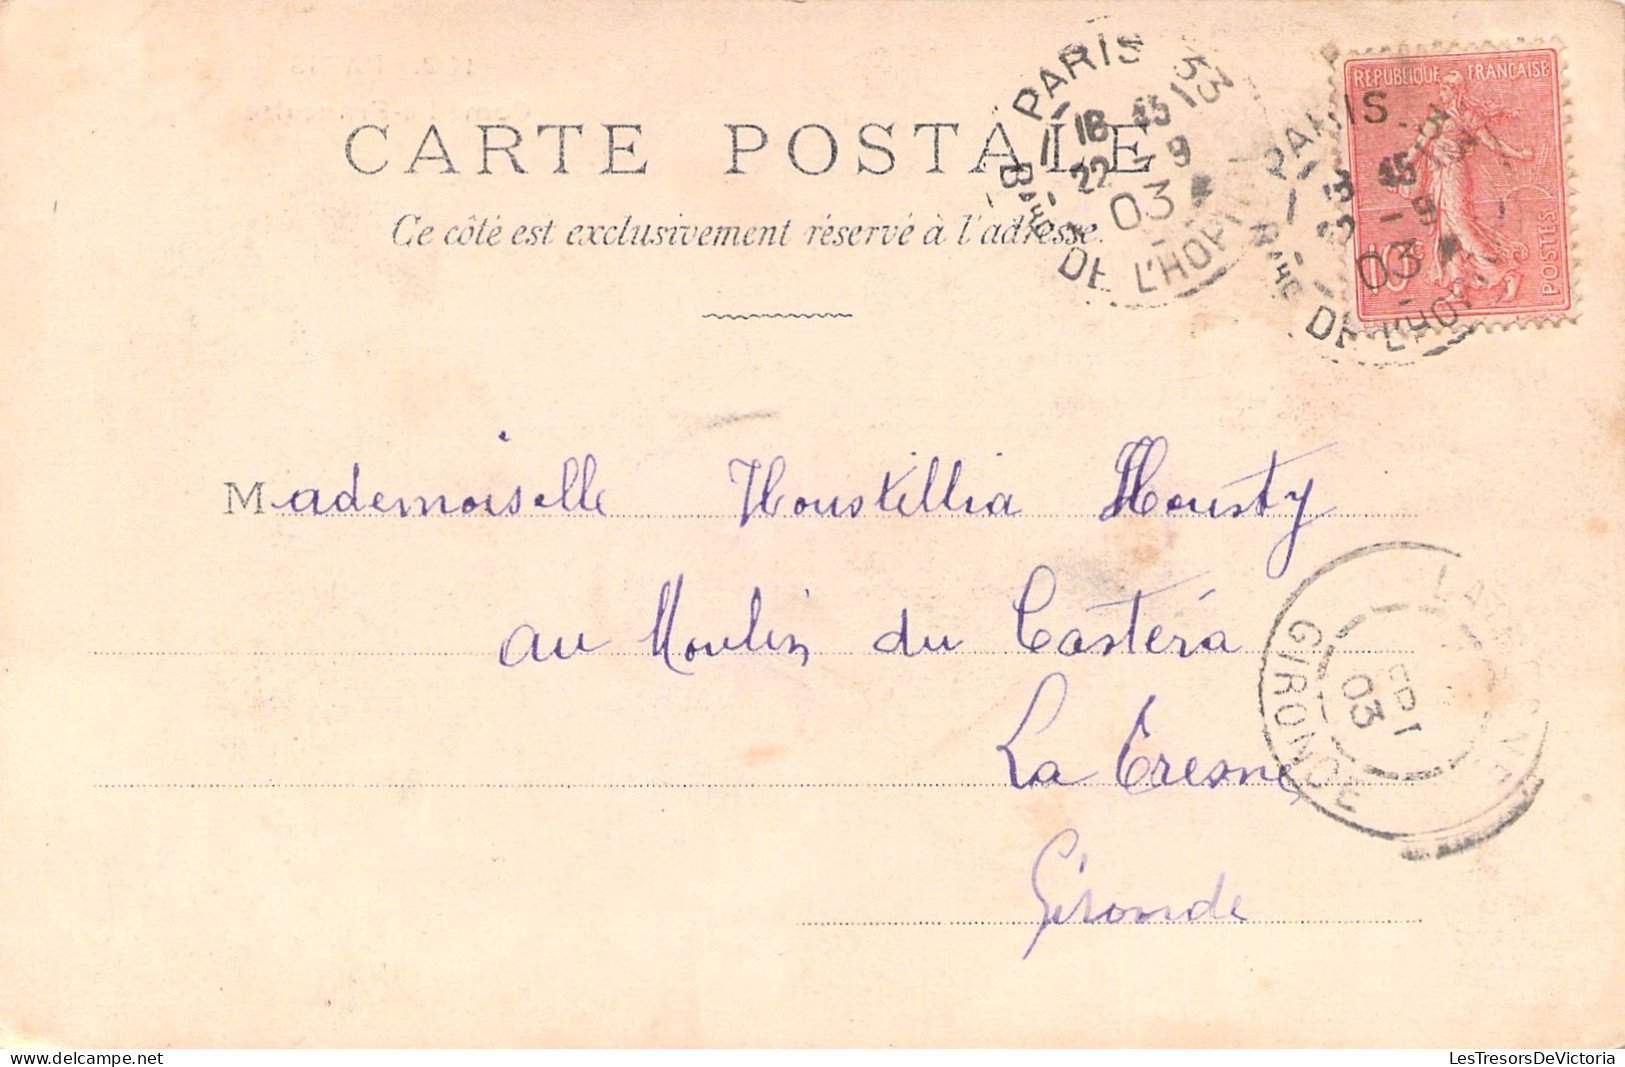 FRANCE - Paris - Comédie Francaise - Carte Postale Ancienne - Onderwijs, Scholen En Universiteiten